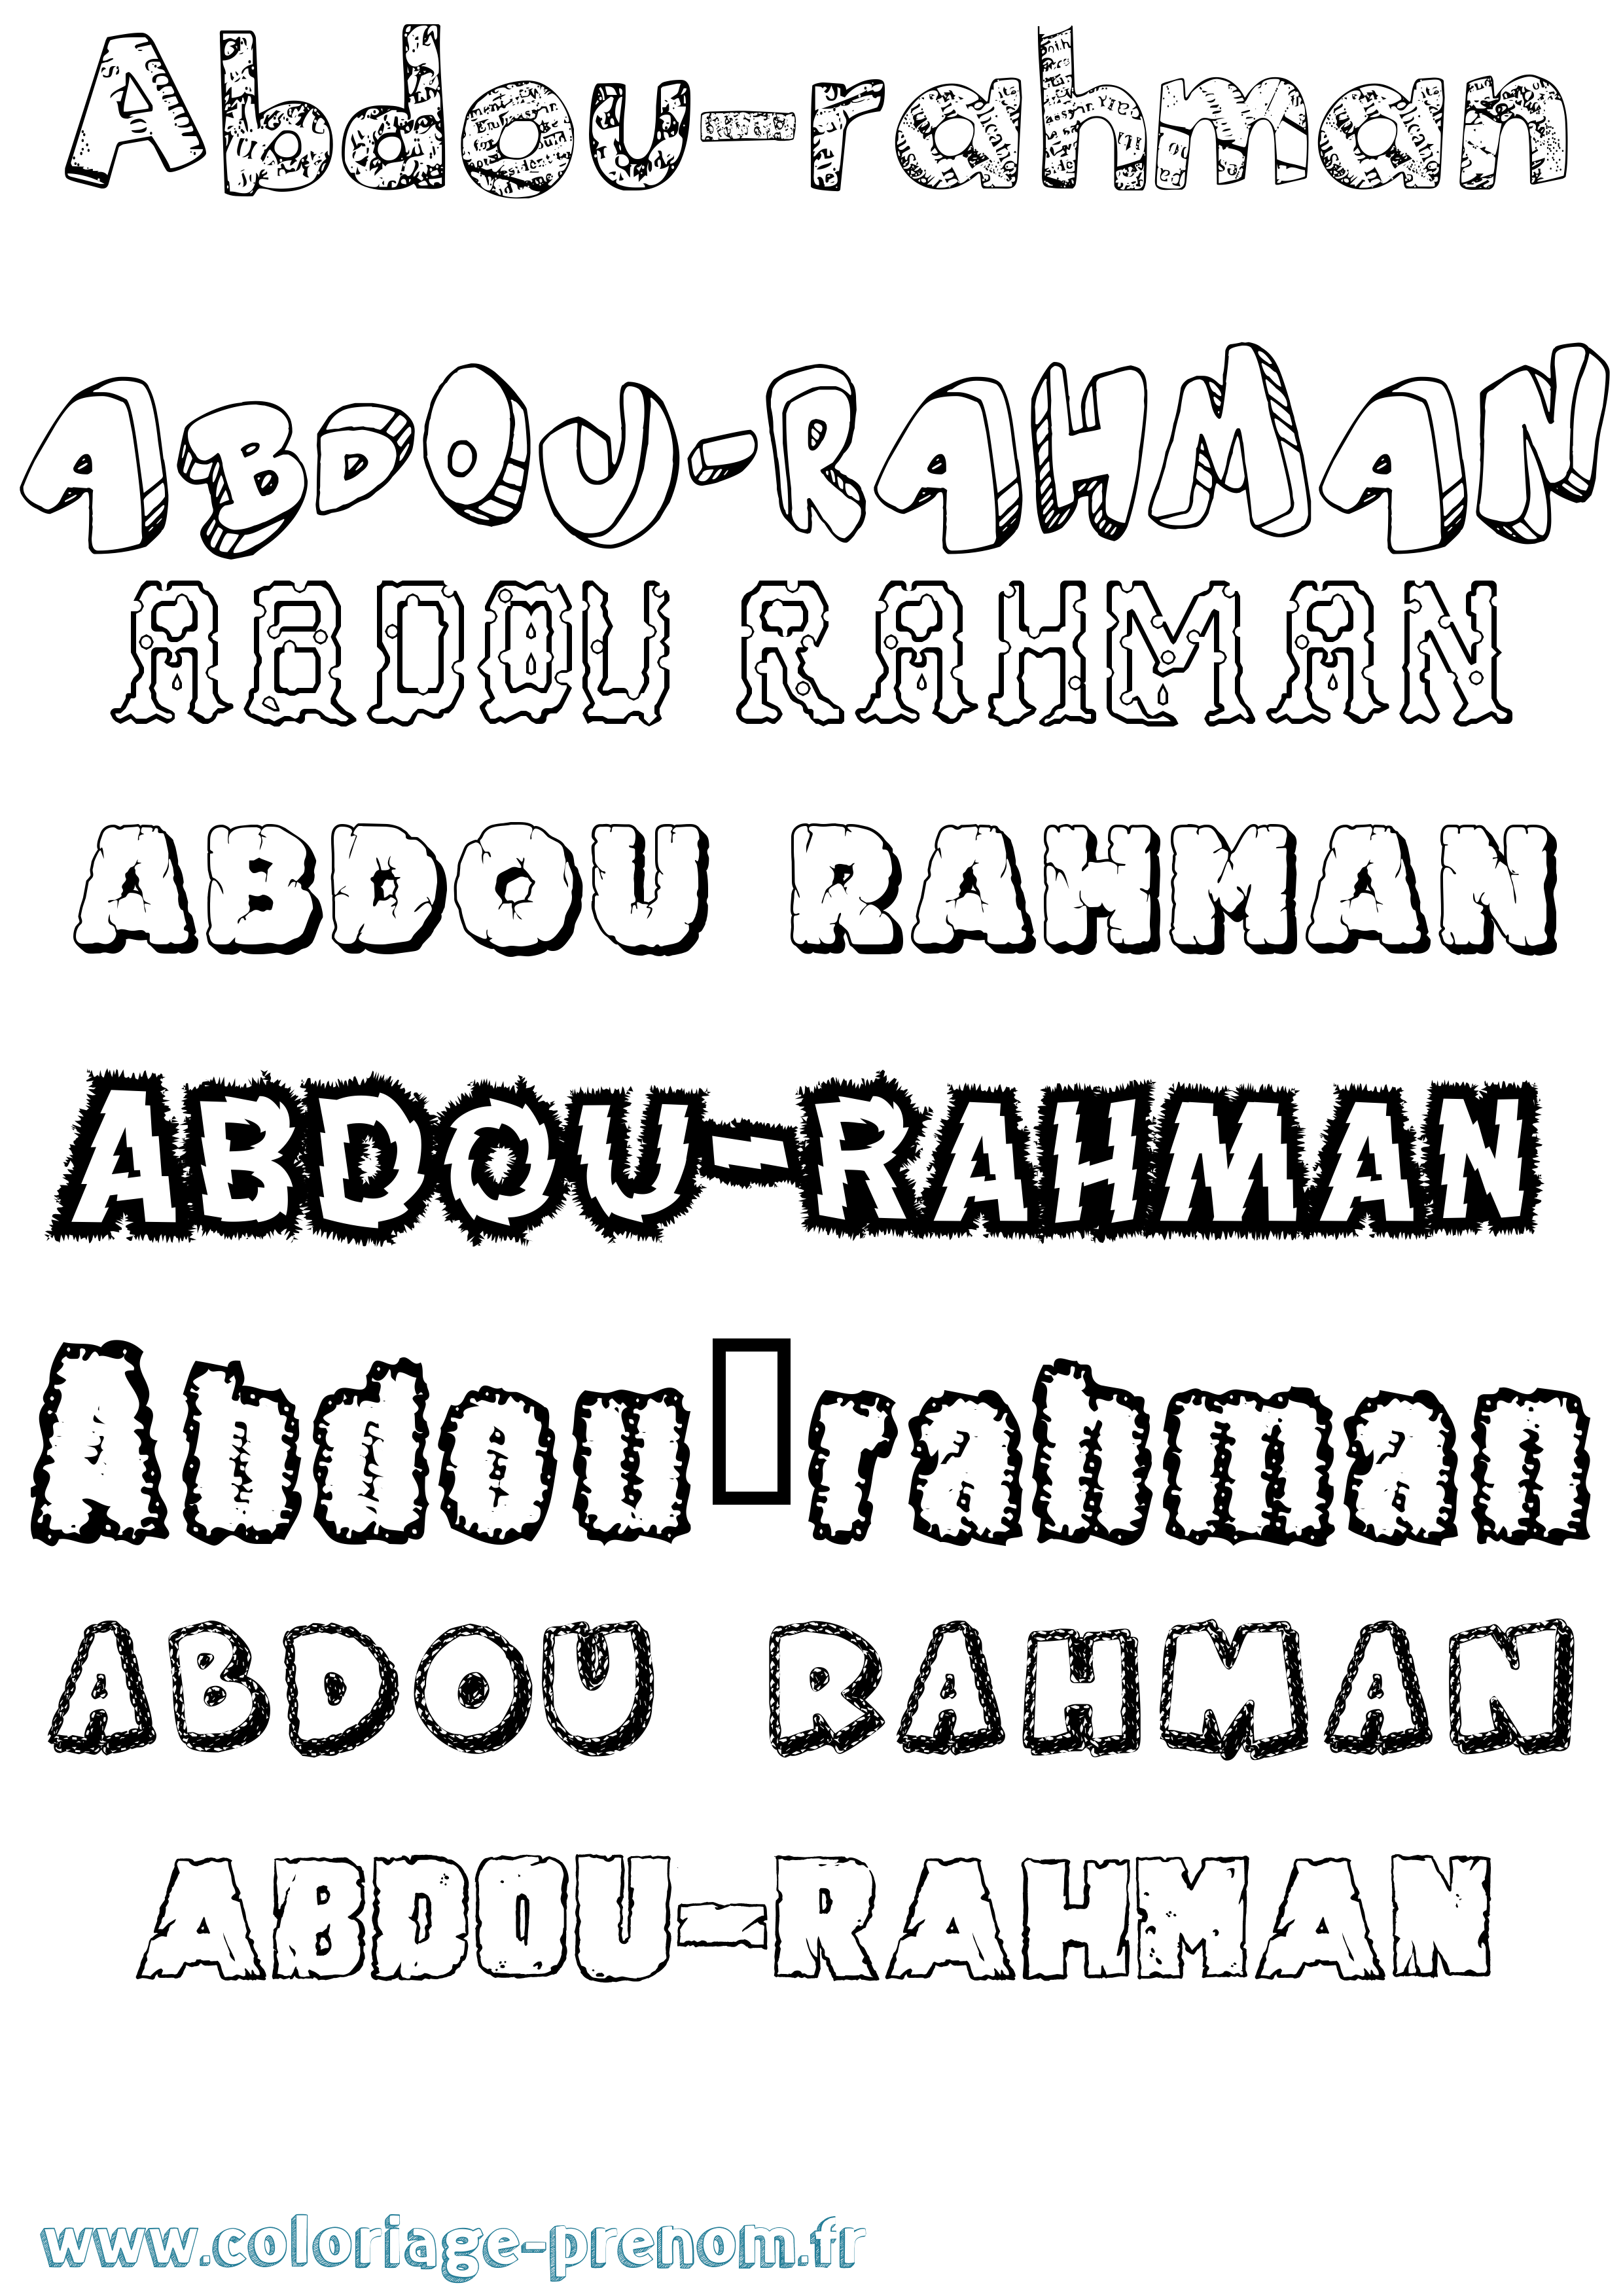 Coloriage prénom Abdou-Rahman Destructuré